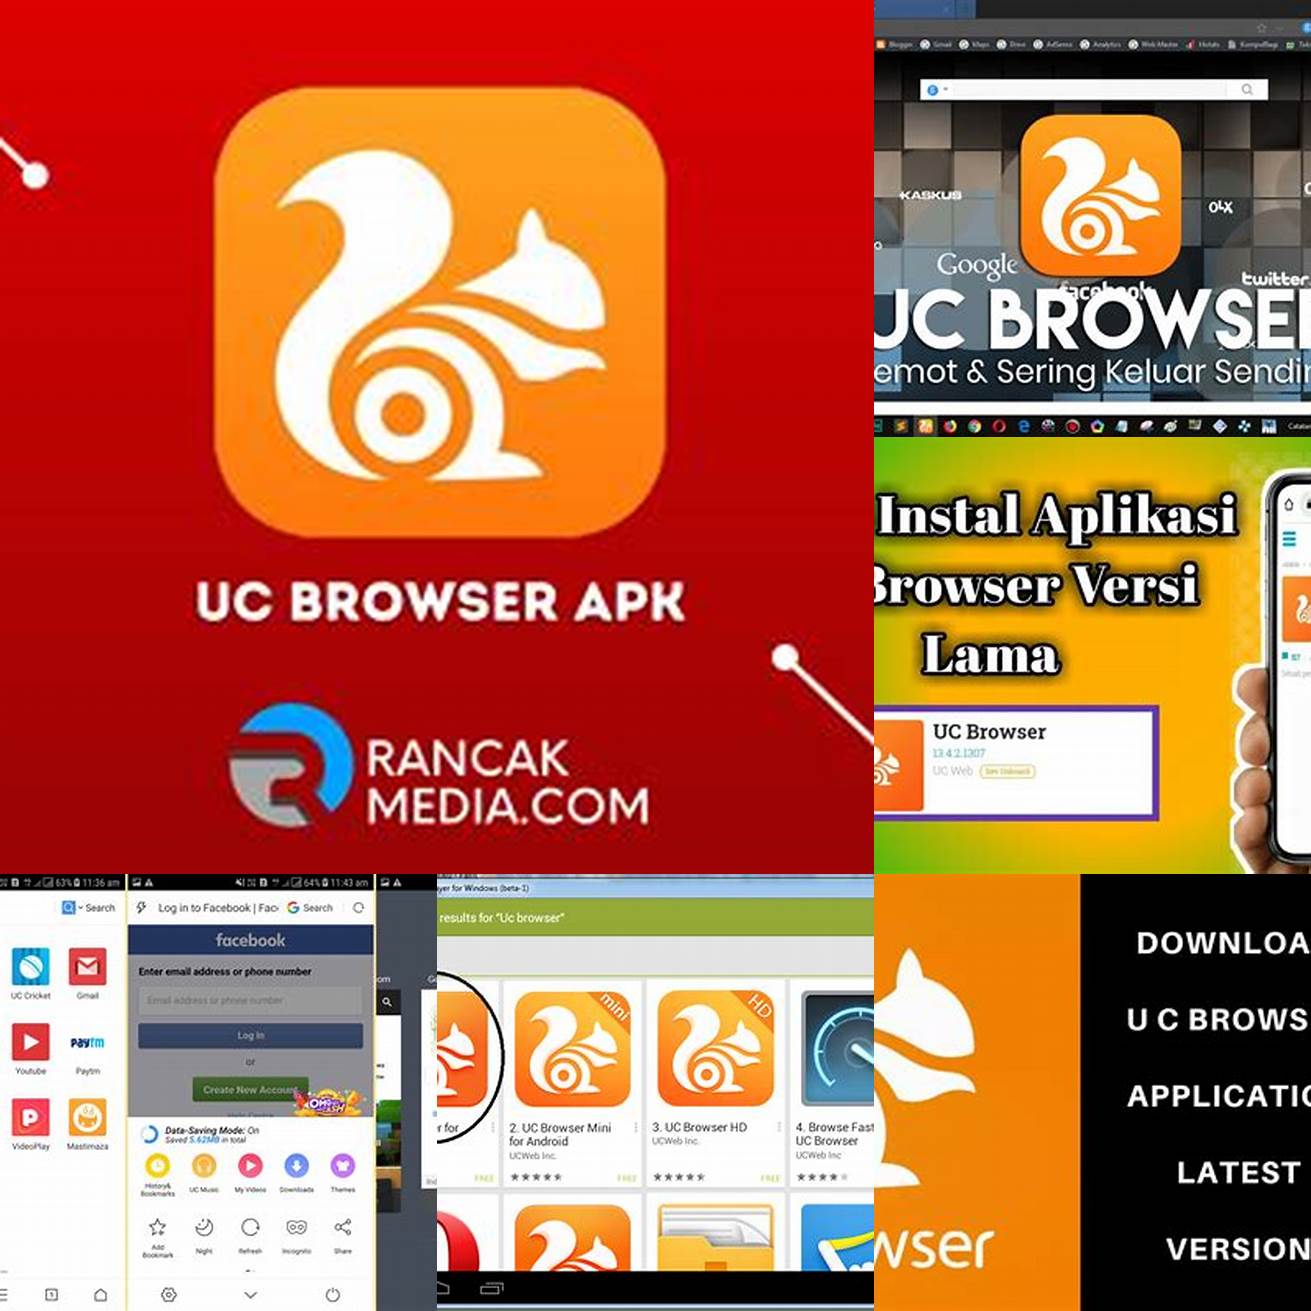 Selesai Sekarang kamu telah berhasil mengunduh dan menginstal APK UC Browser versi lama